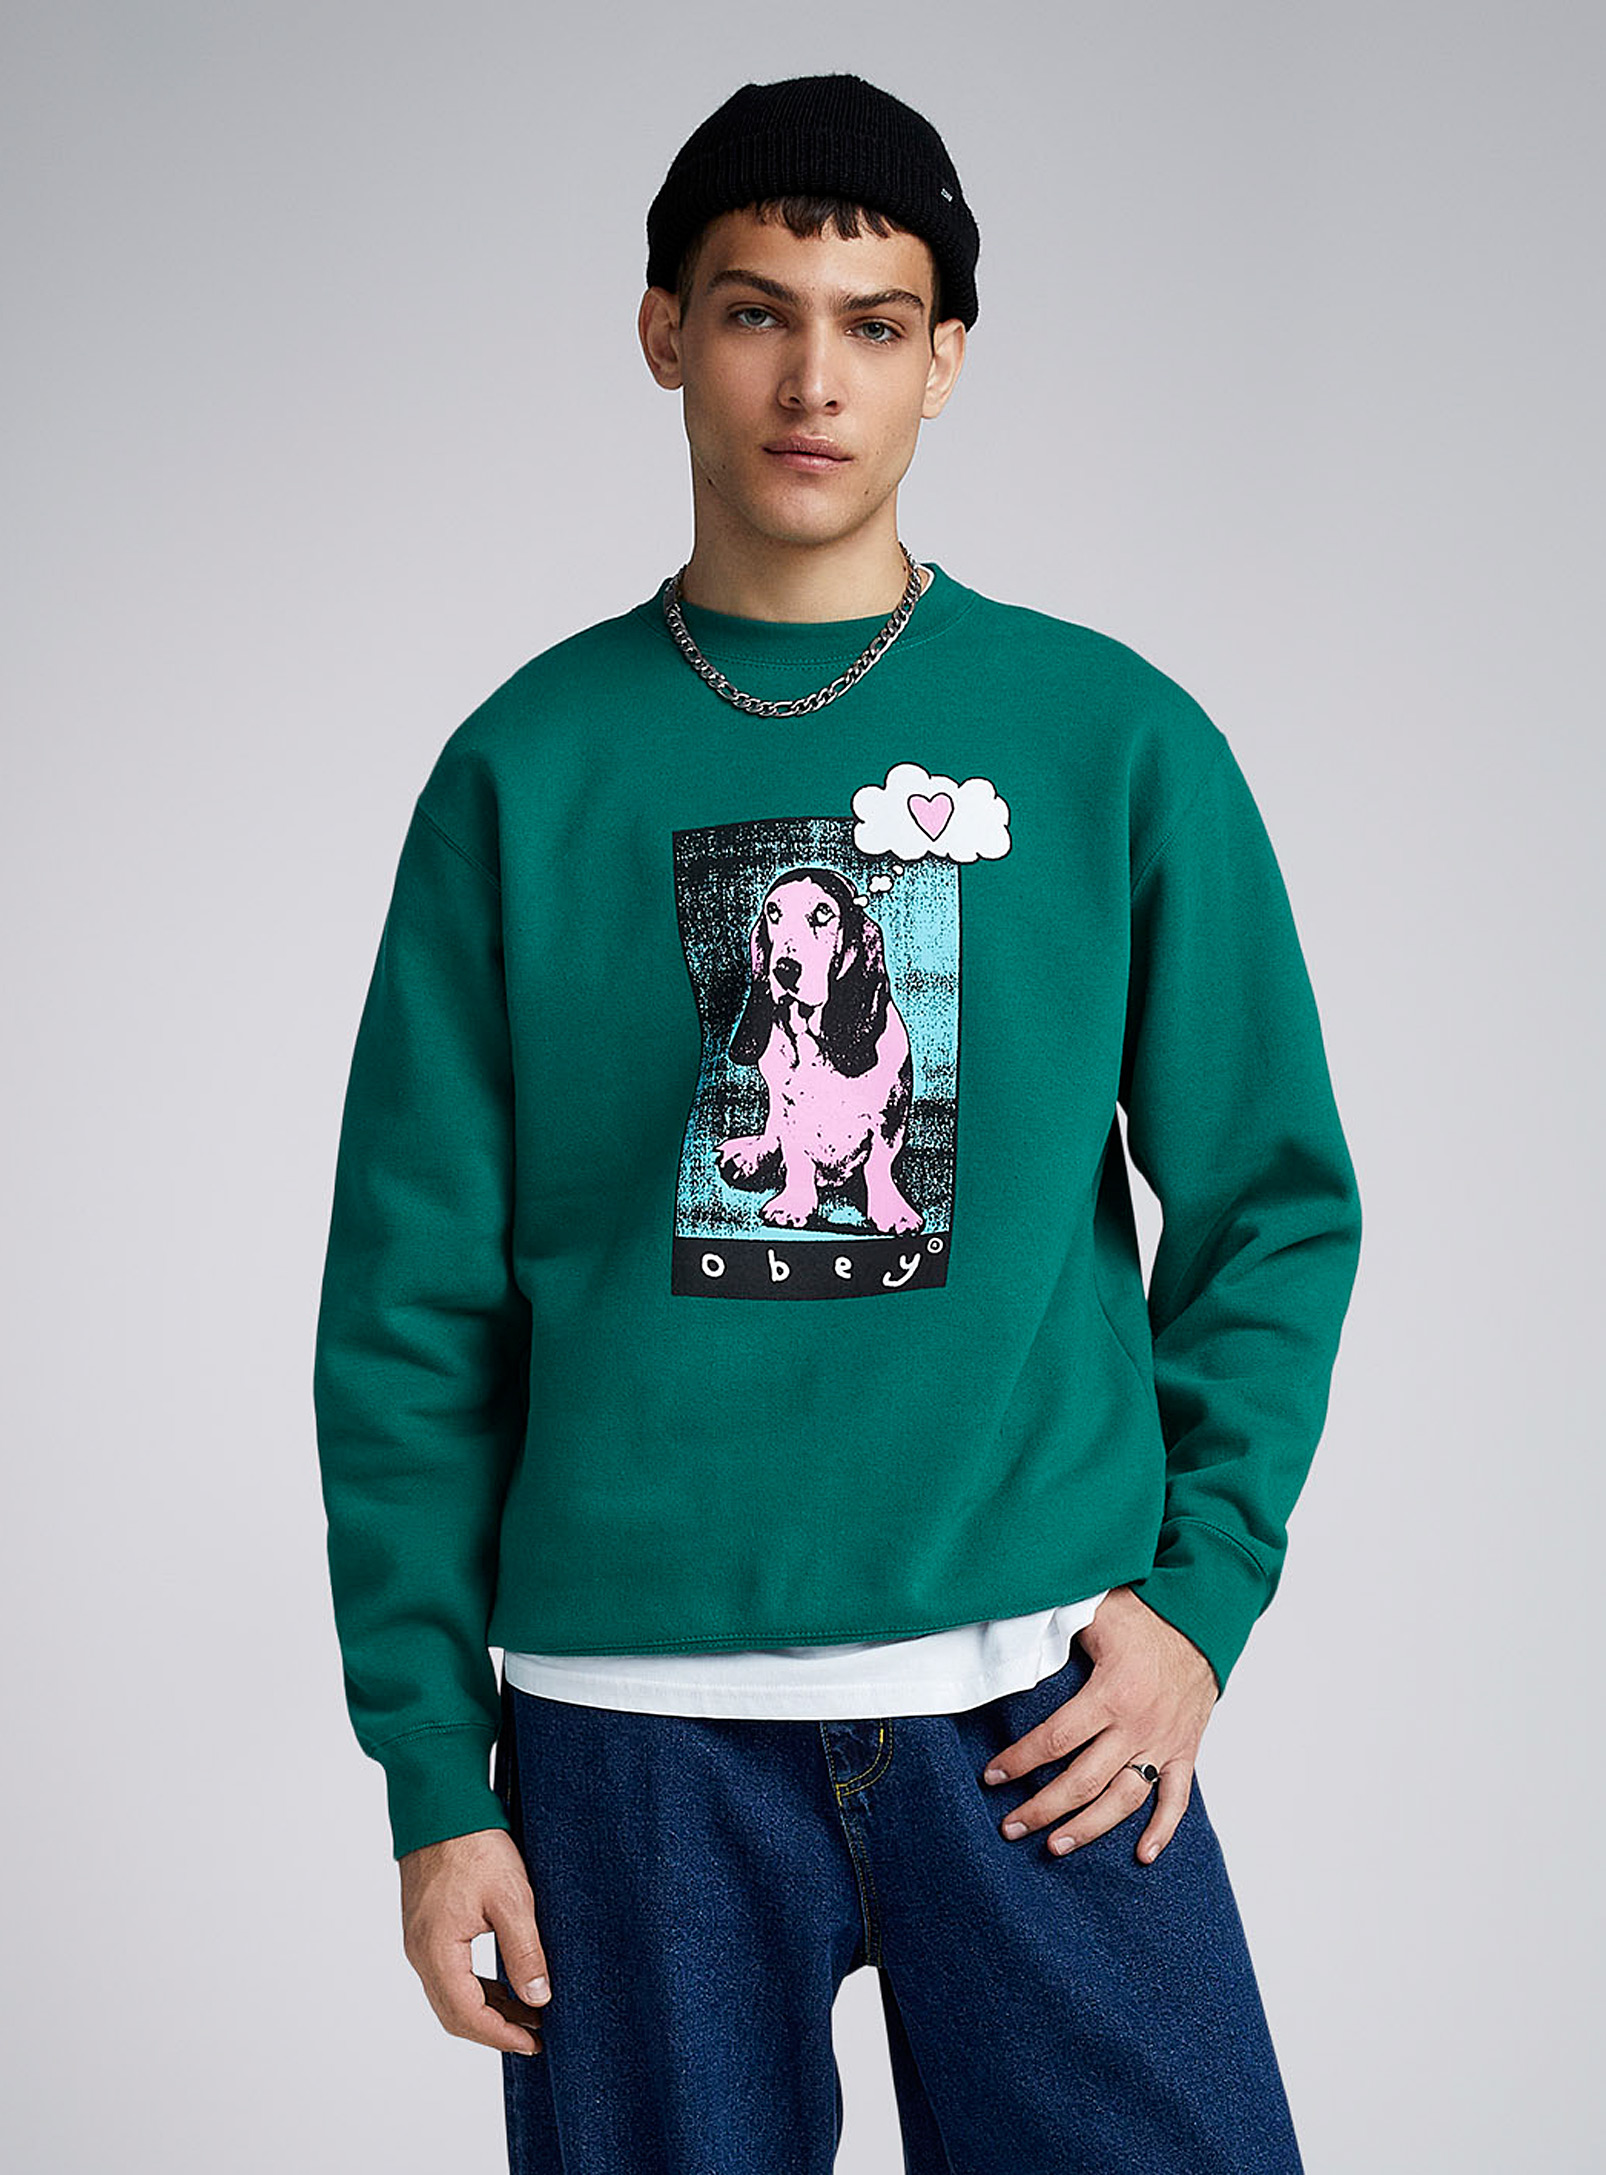 Obey - Men's Love pup sweatshirt